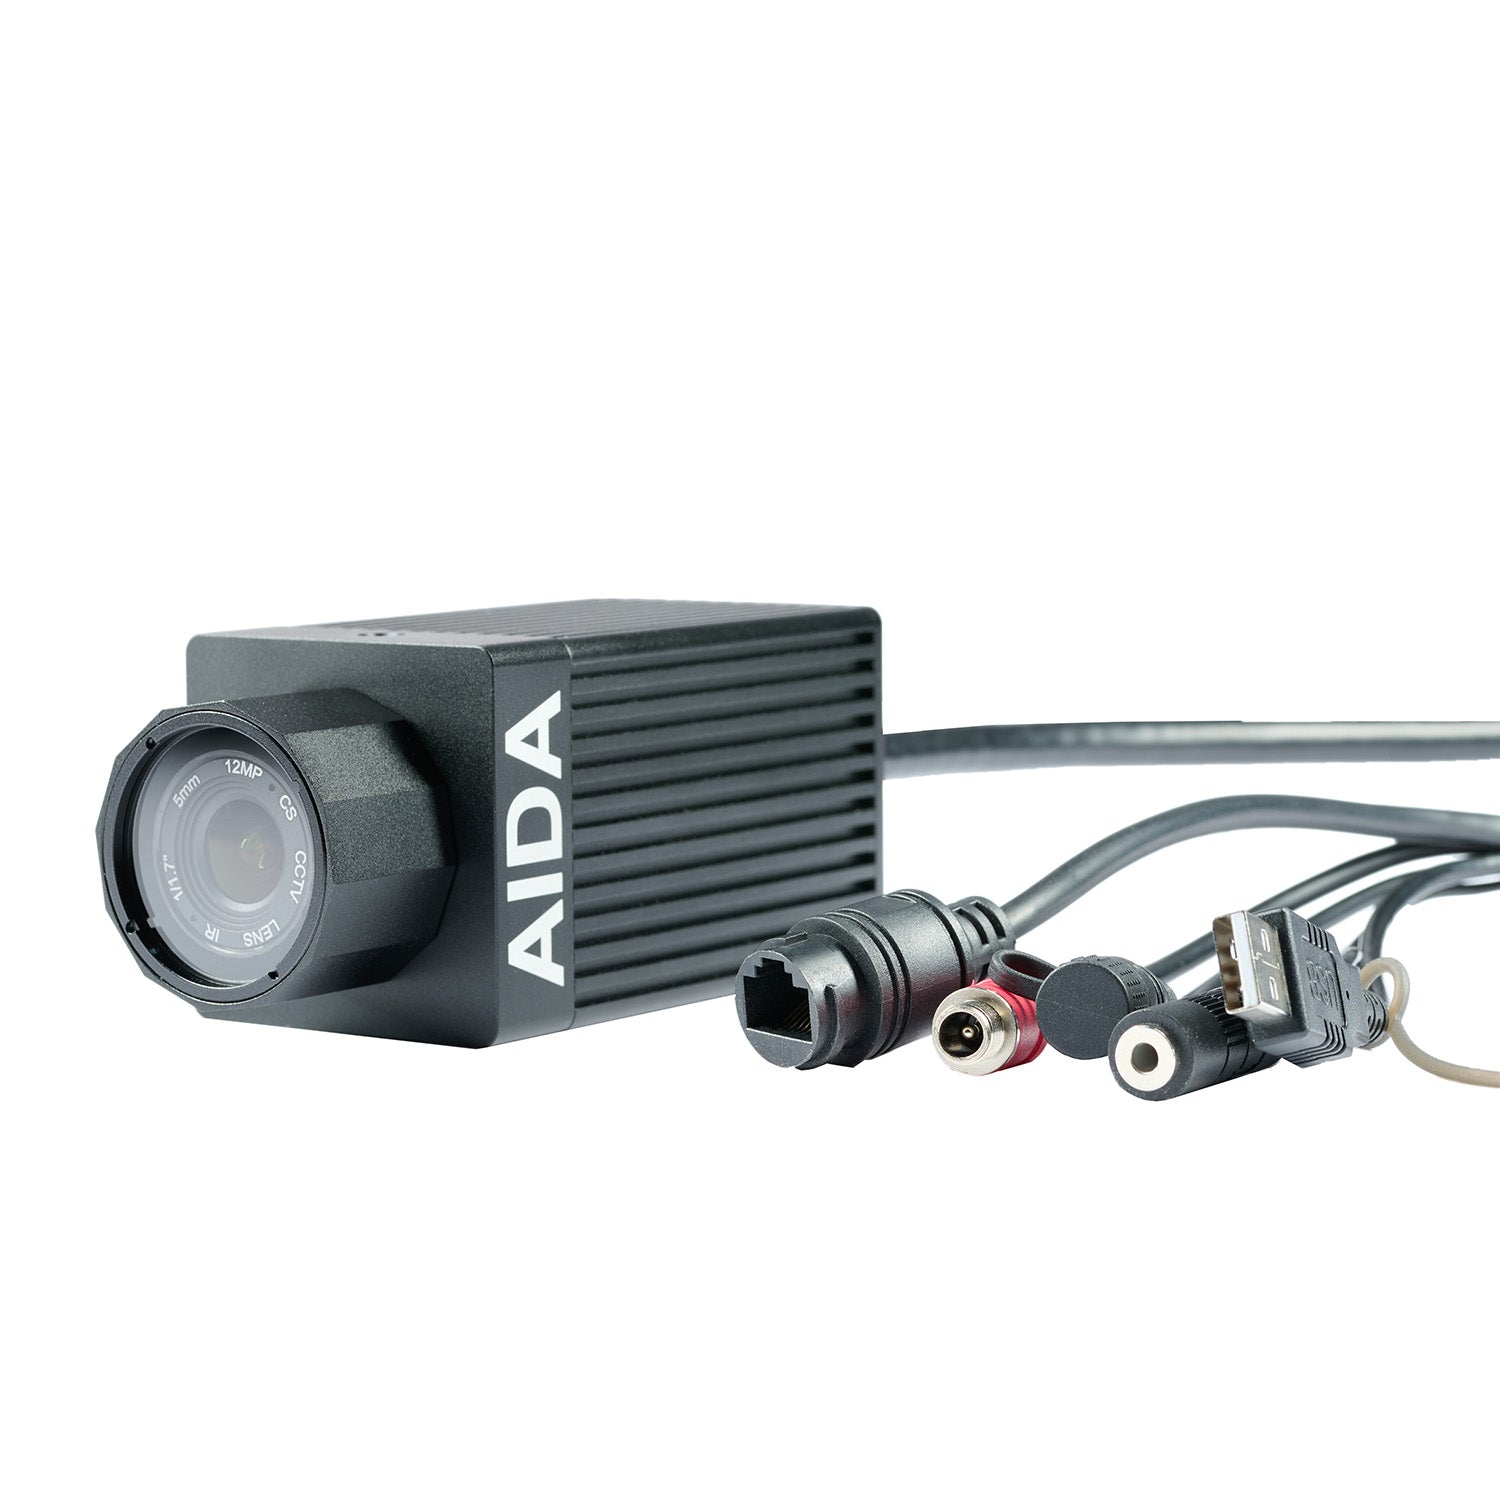 AIDA Imaging HD-NDI3-IP67 - HD NDI|HX3 Weatherproof POV Camera with 120fps, connectors